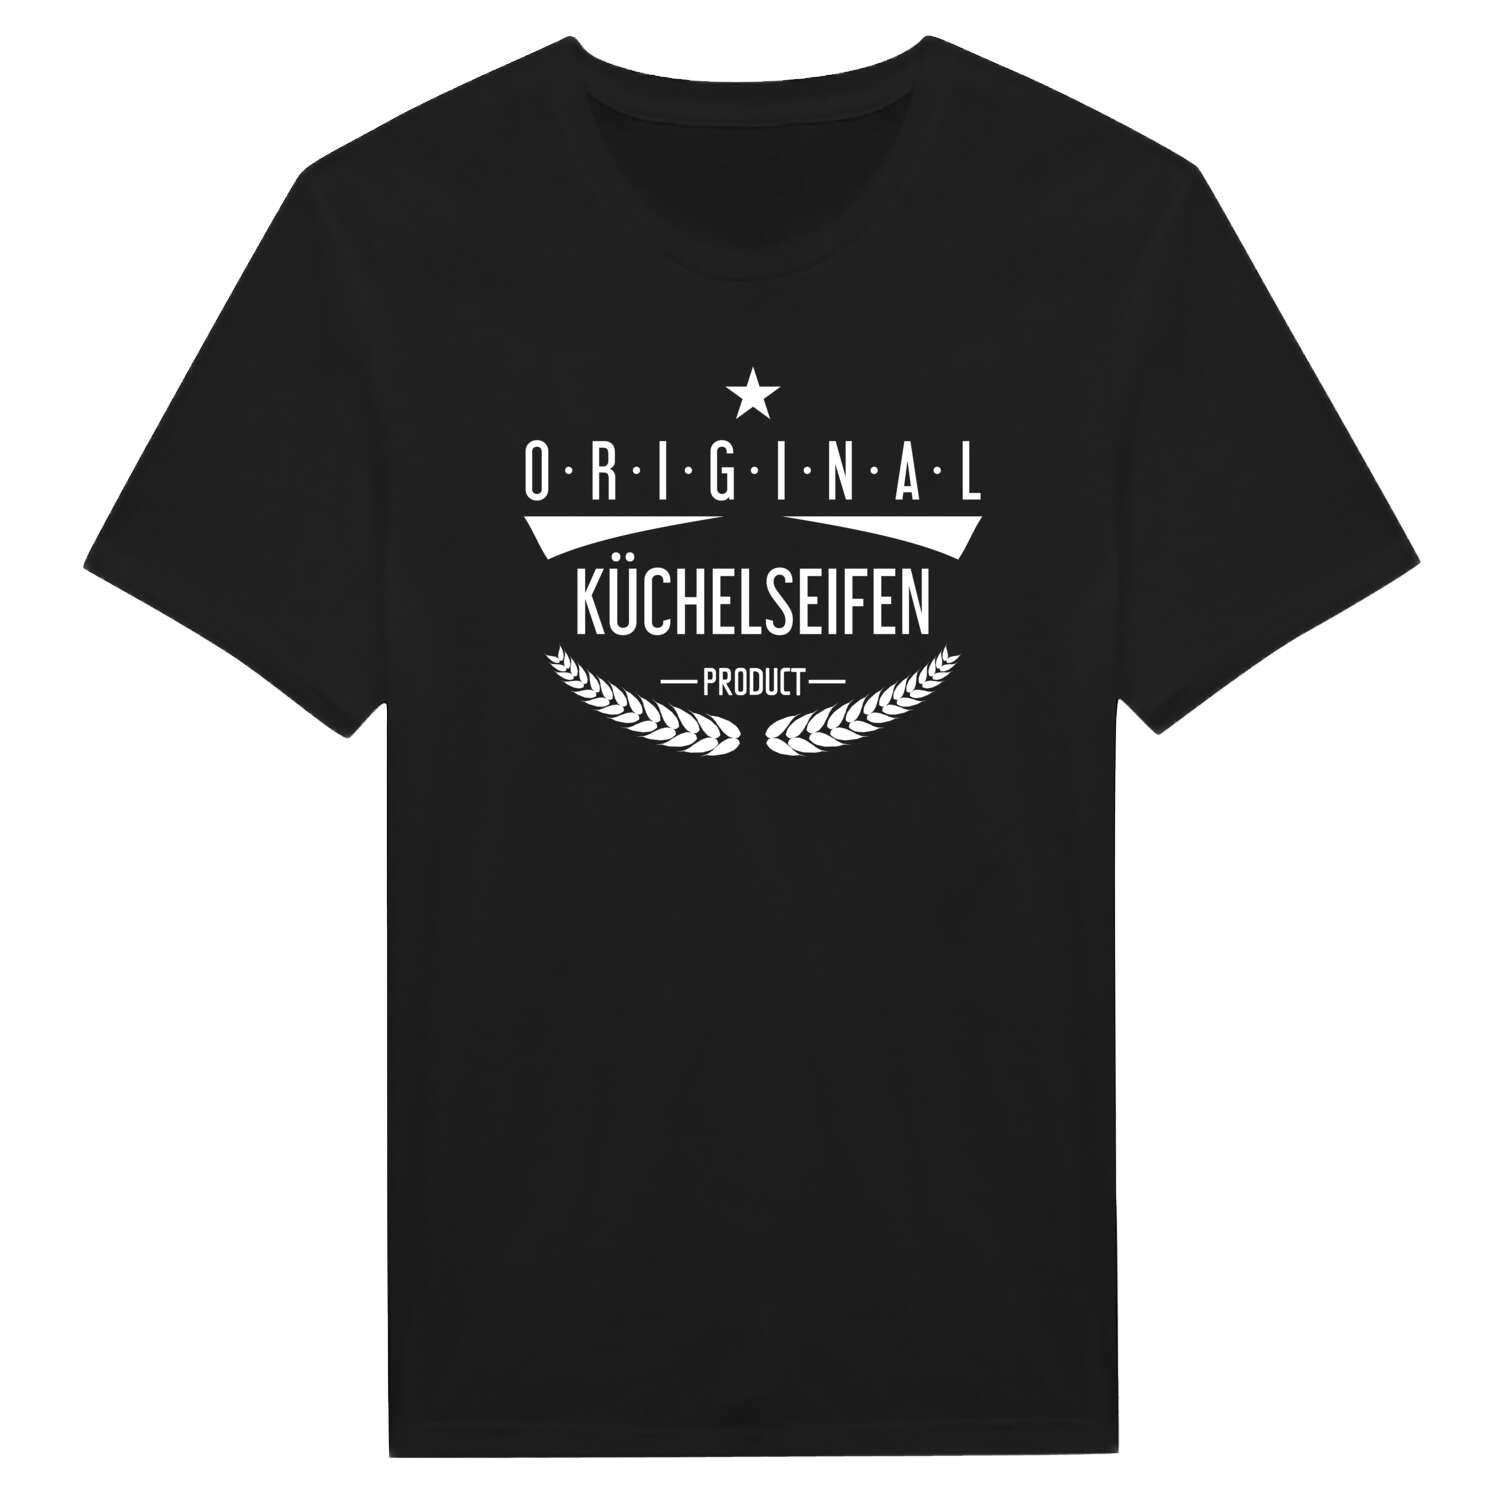 Küchelseifen T-Shirt »Original Product«